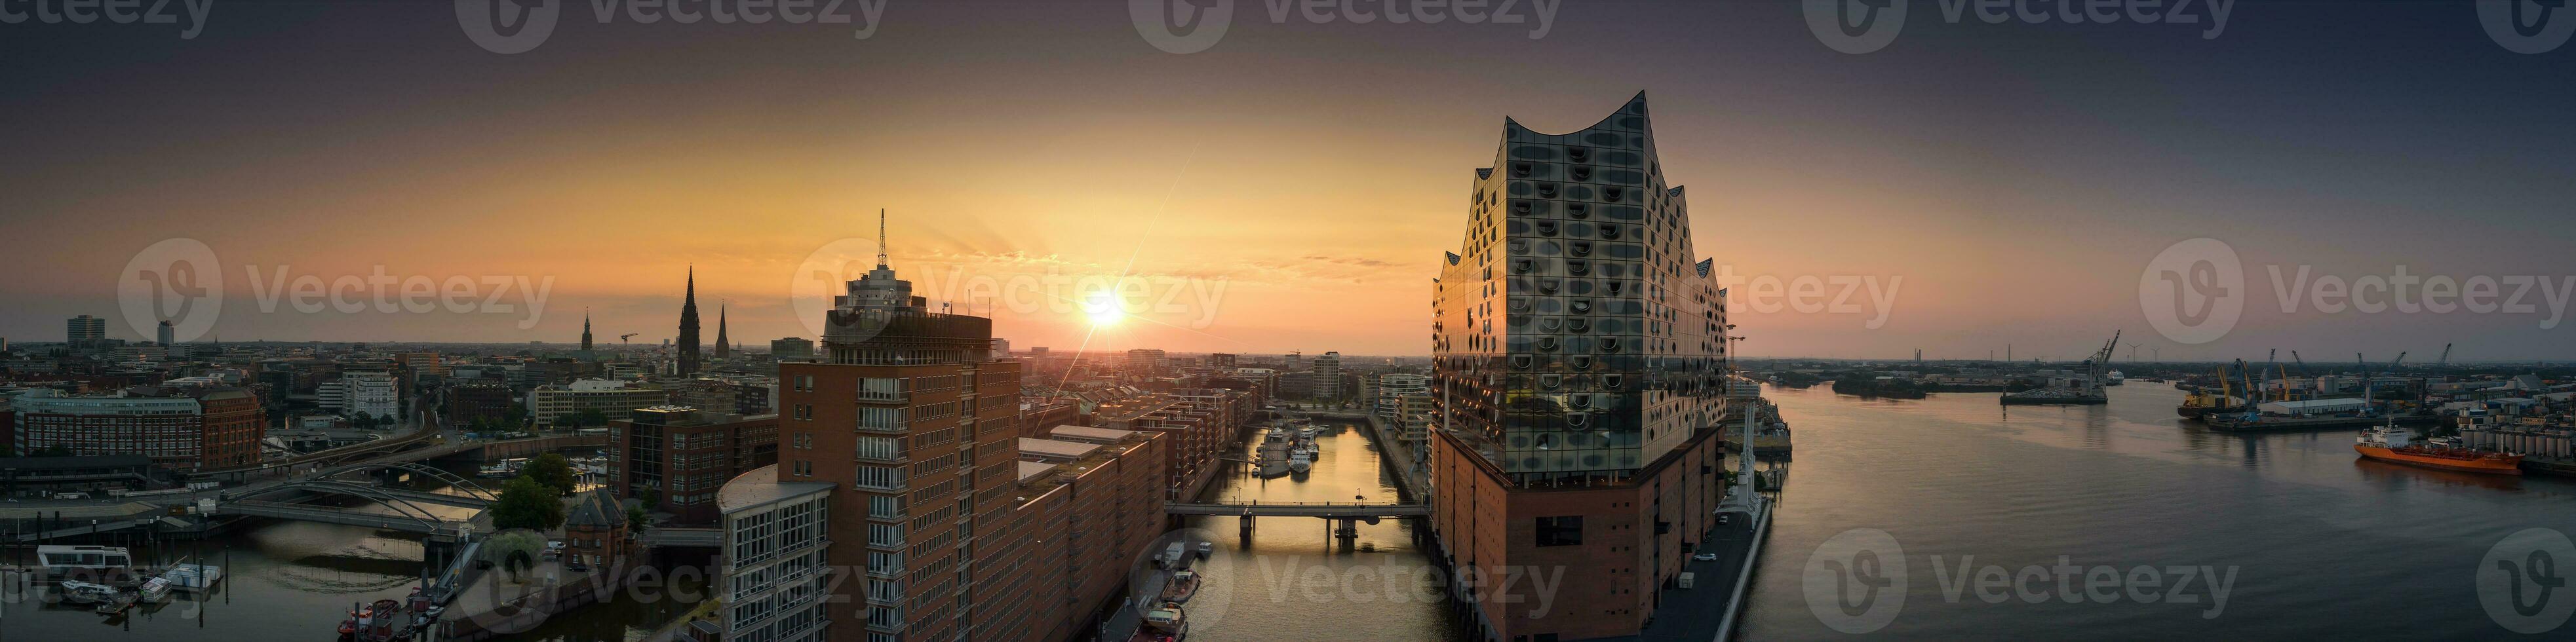 panorama van de elbphilharmonie, hafencity en speicherstadt in Hamburg Bij zonsopkomst foto